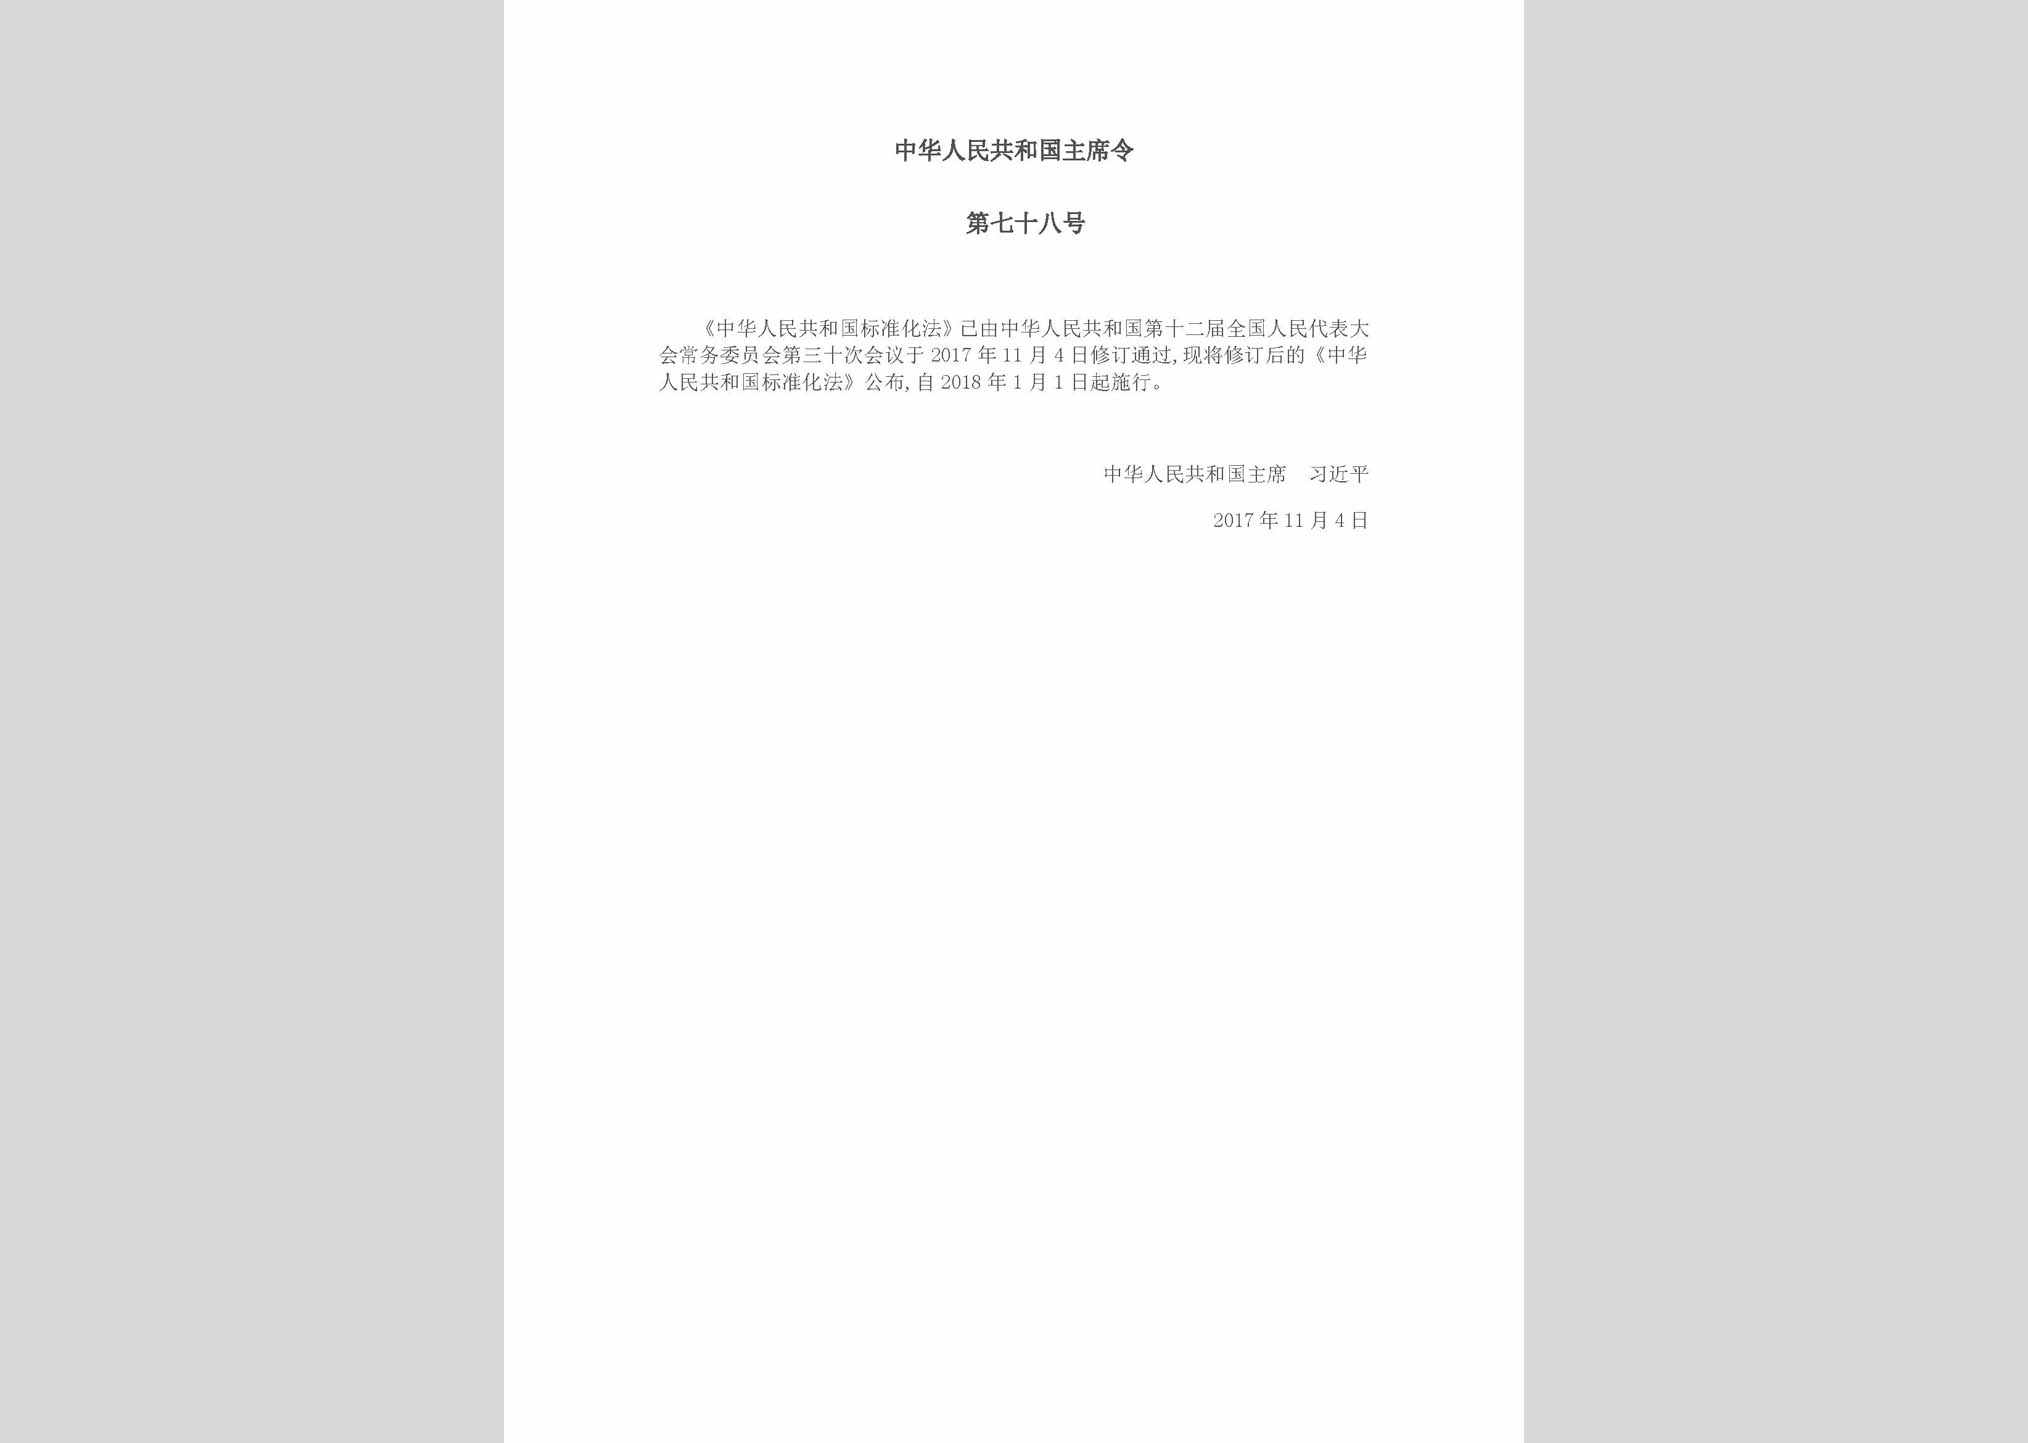 中华人民共和国主席令第七十八号：中华人民共和国标准化法(2017年修订)